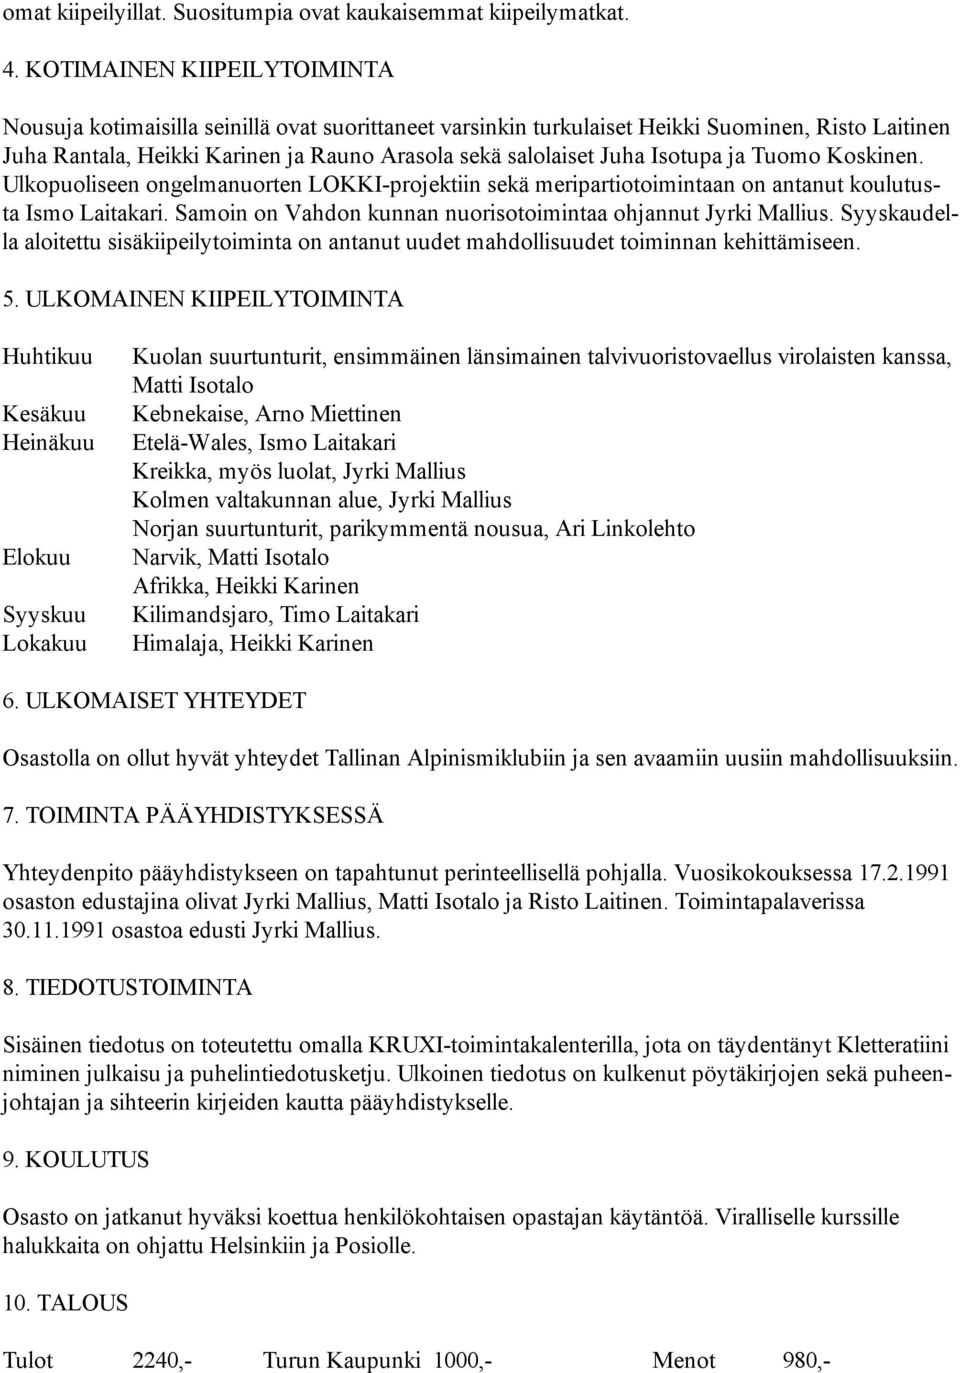 Isotupa ja Tuomo Koskinen. Ulkopuoliseen ongelmanuorten LOKKI-projektiin sekä meripartiotoimintaan on antanut koulutusta Ismo Laitakari.